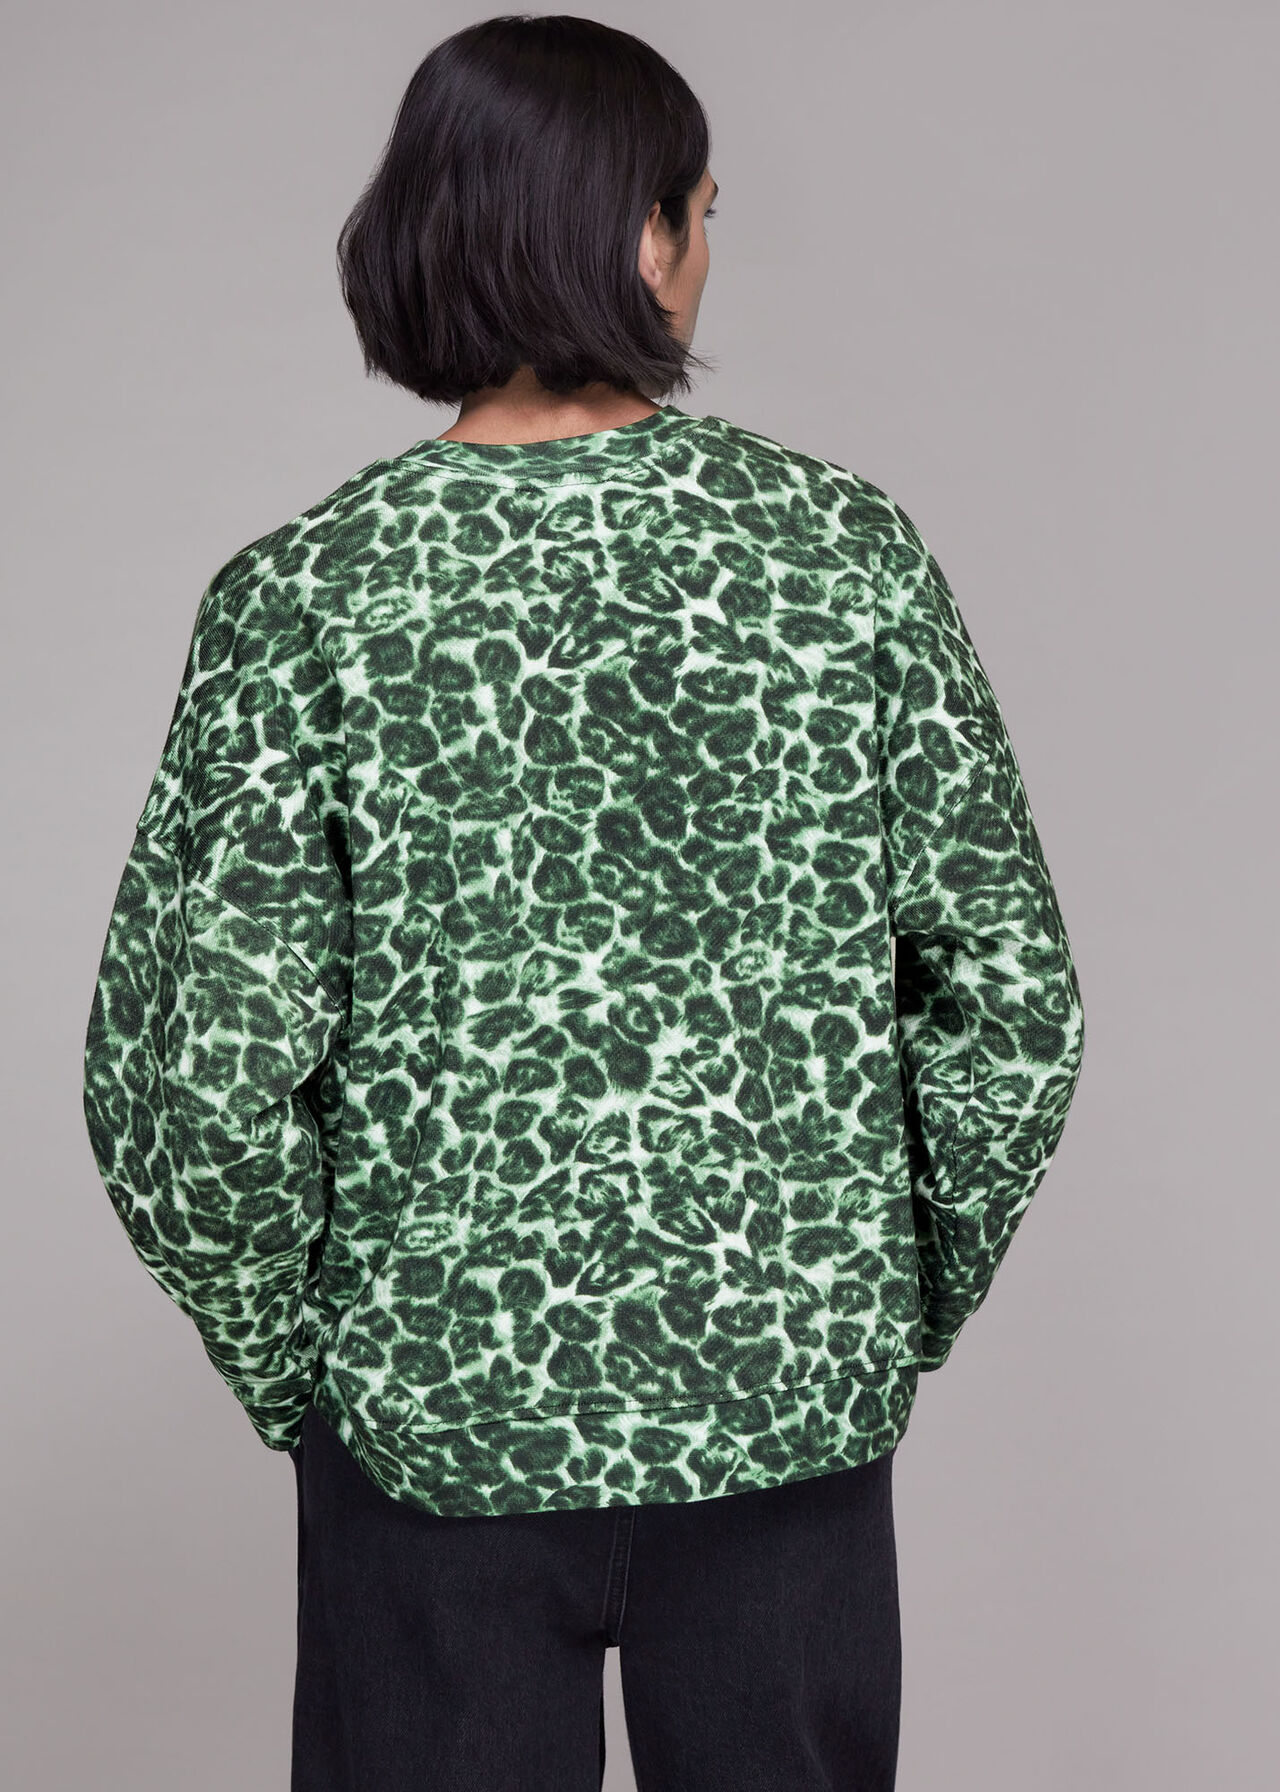 Clouded Leopard Sweatshirt